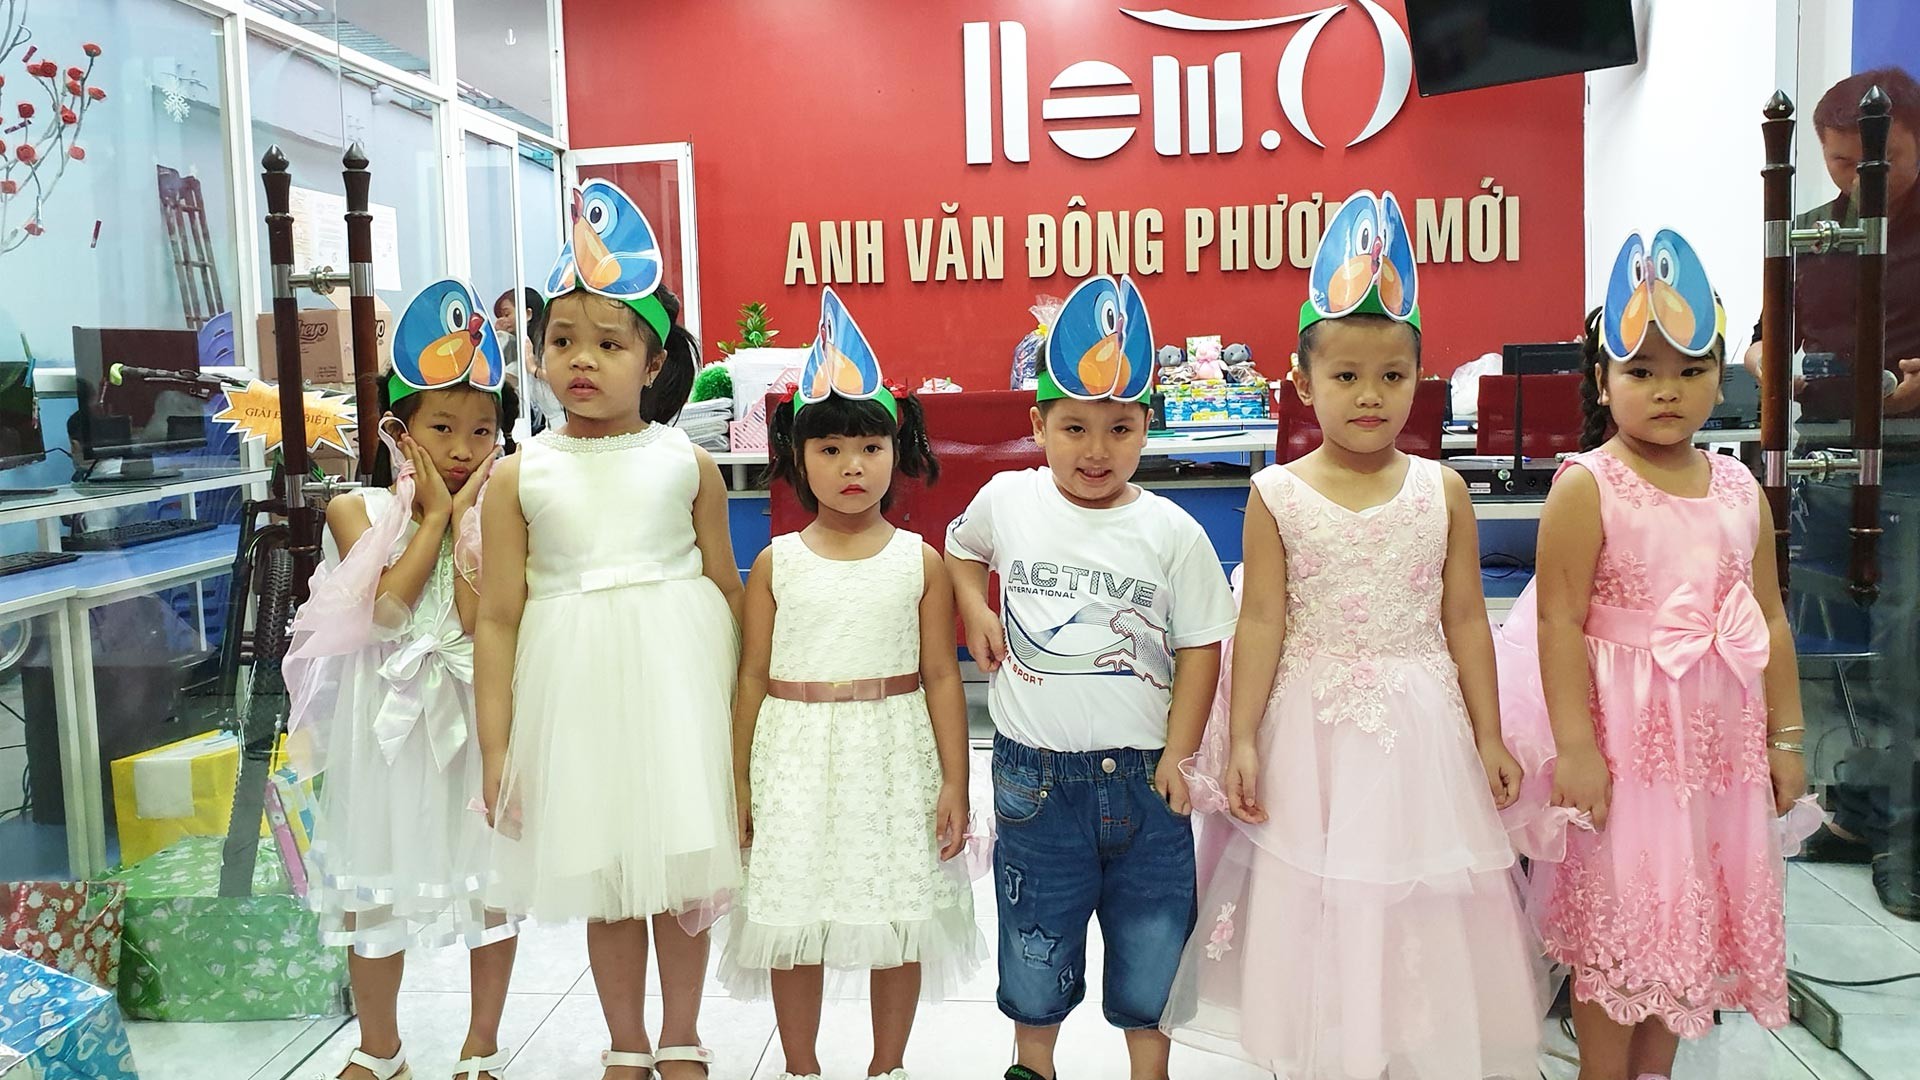 Đông Phương Mới: Trung tâm tiếng Anh cho trẻ 4 tuổi Quận Gò Vấp